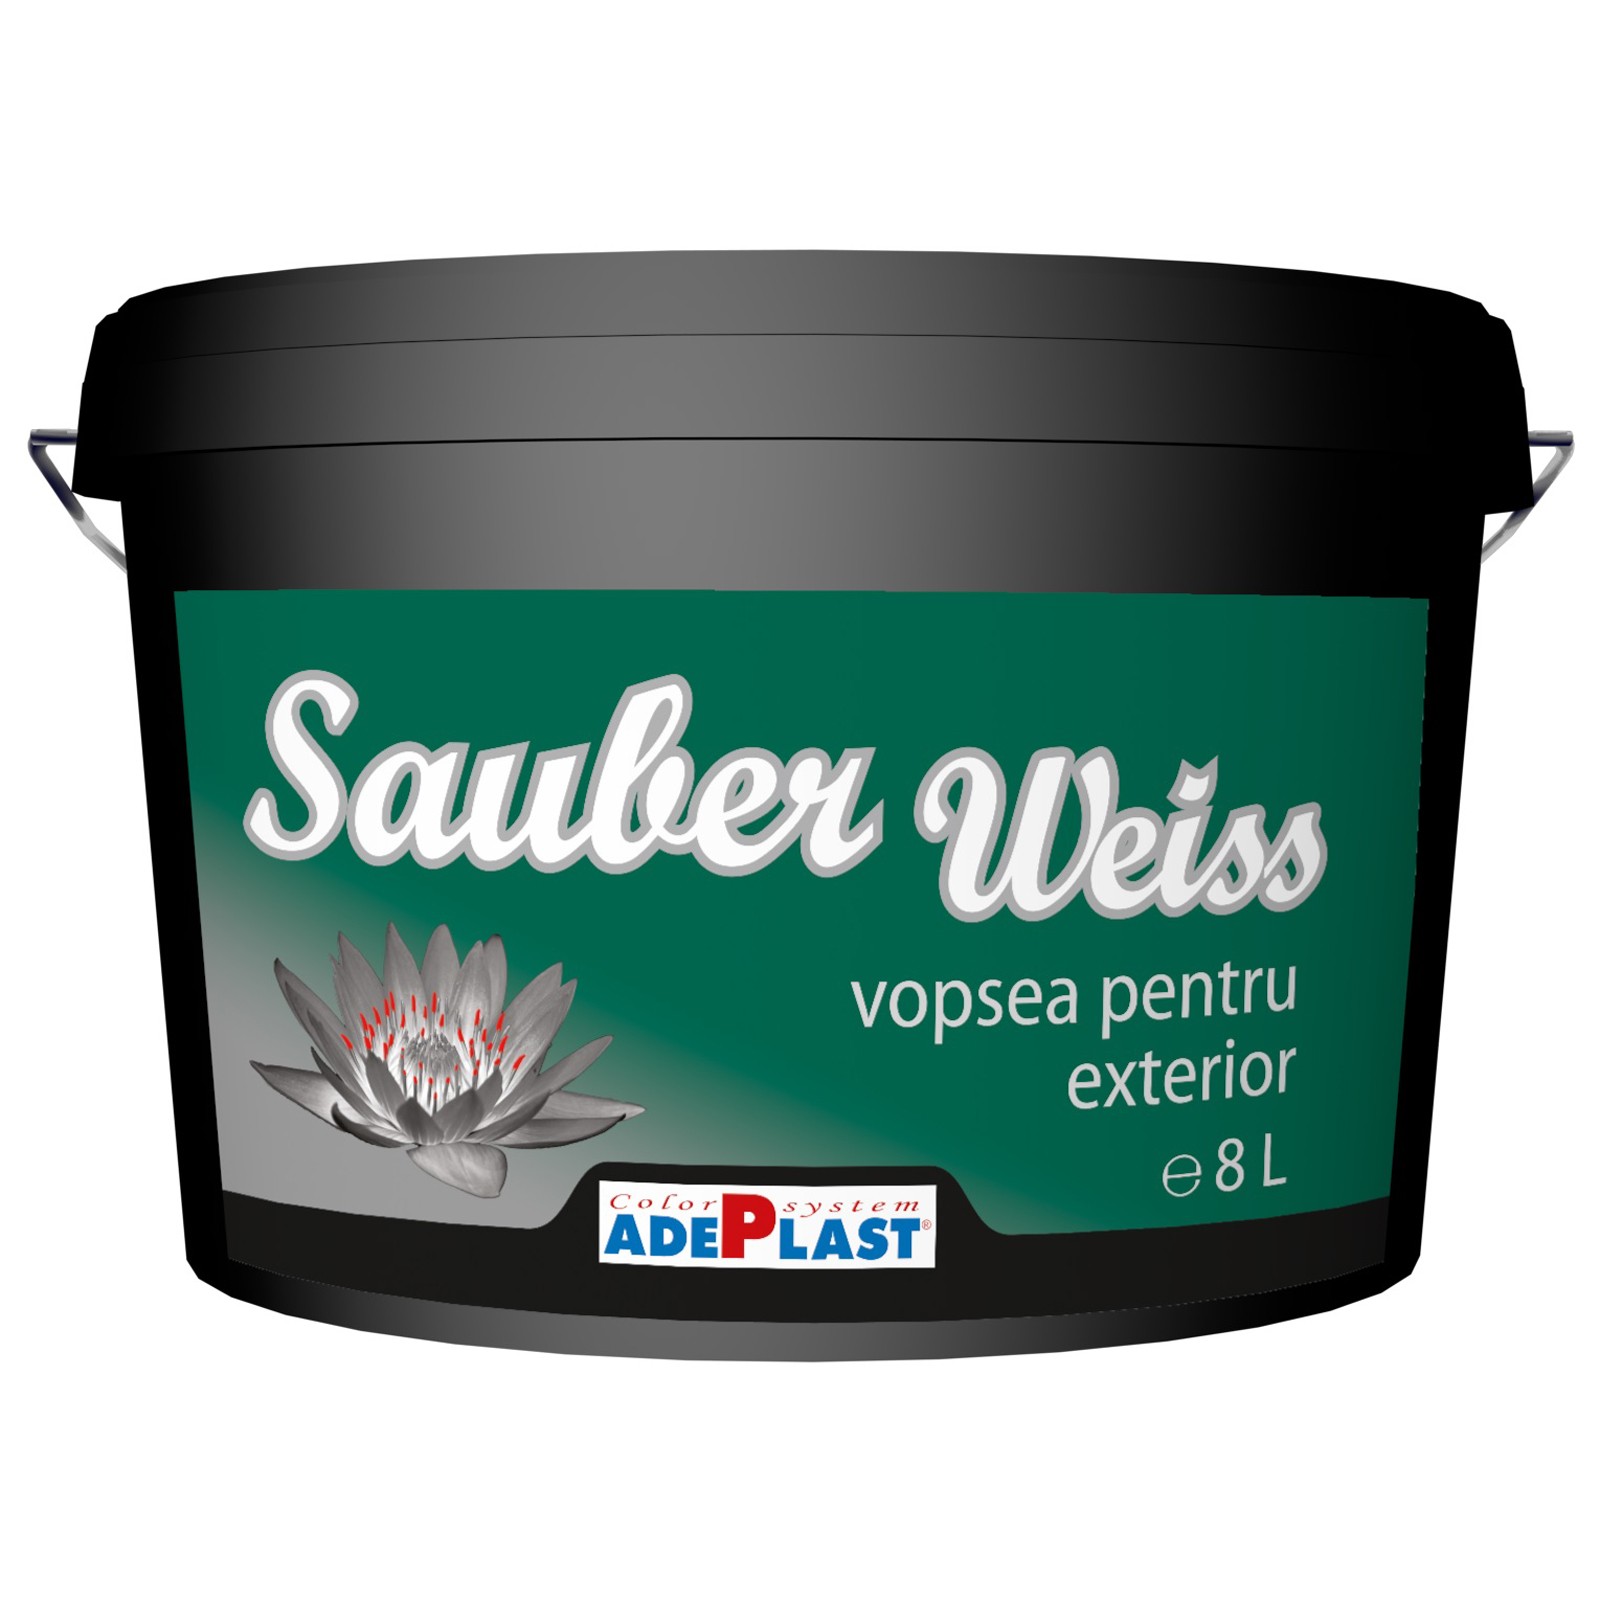 Vopseluri - Vopsea lavabila pentru exterior Adeplast Sauber Weiss alba 3L, https:maxbau.ro